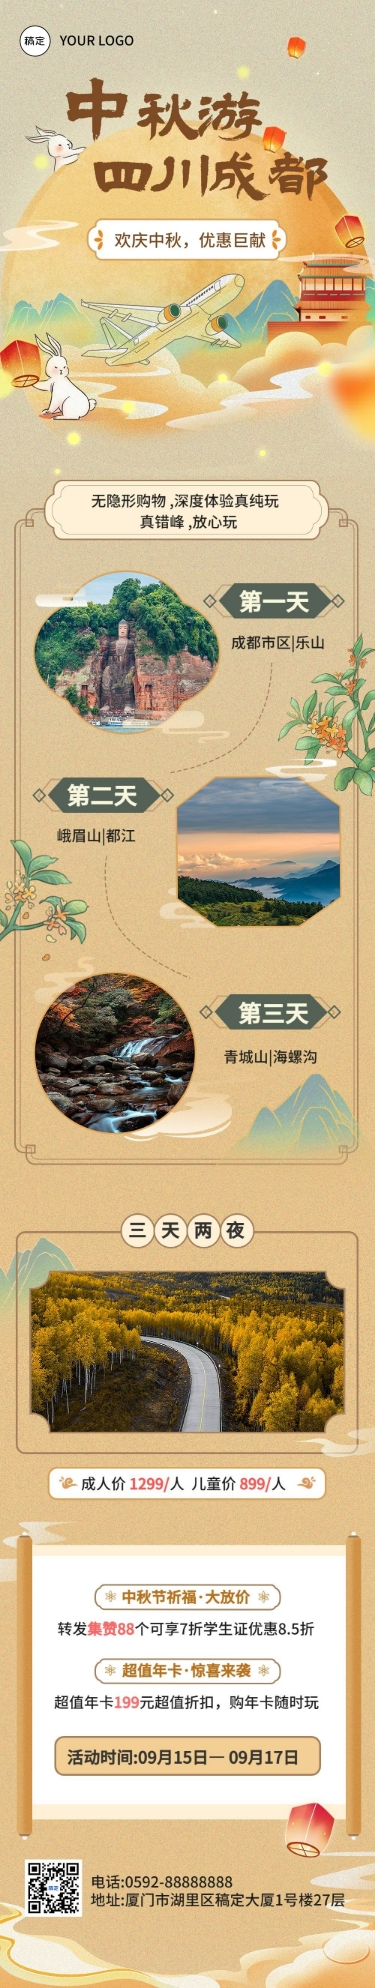 中秋节旅游节日营销水彩中国风文章长图